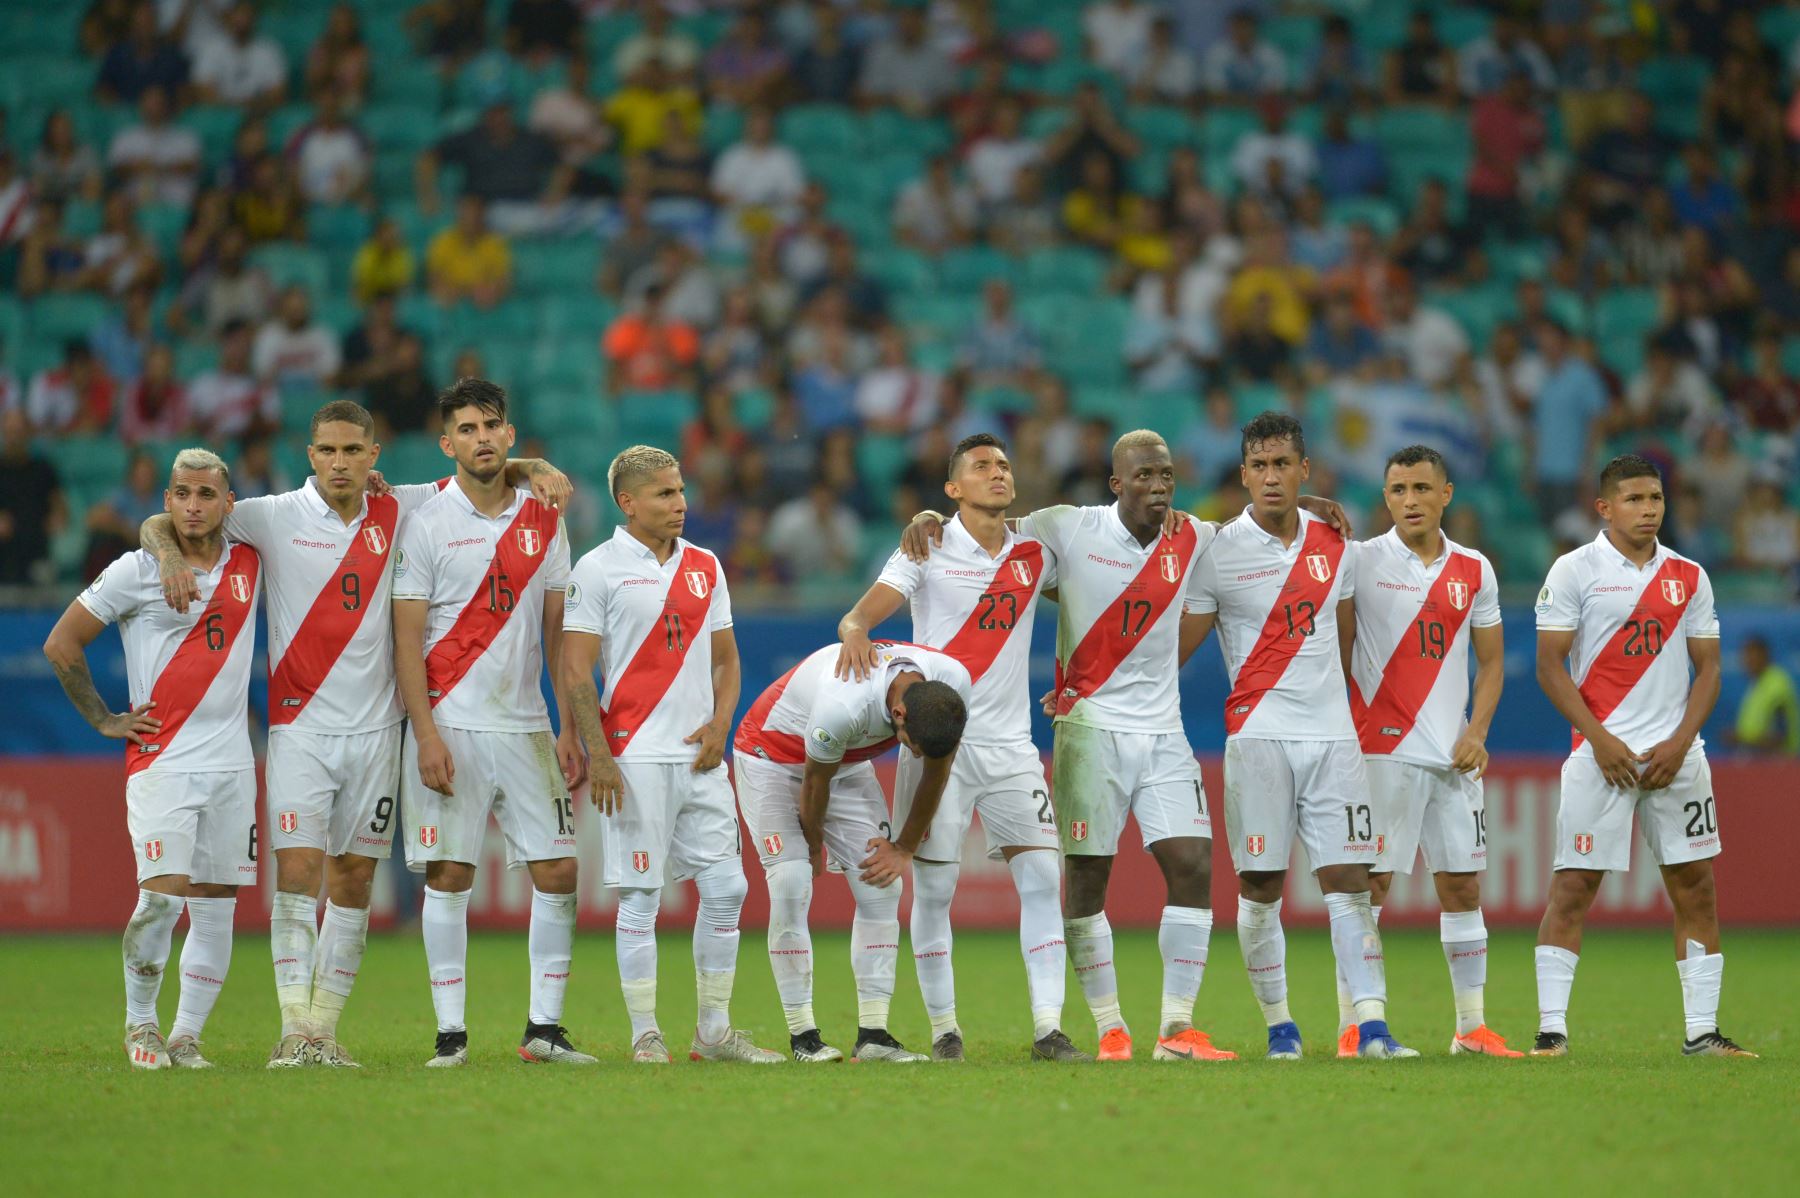 Los jugadores de Perú se reúnen antes del tiroteo de penal contra Uruguay después de empatar 0-0 durante su partido de cuartos de final del torneo de fútbol de la Copa América en el Fonte Nova Arena en Salvador, Brasil.
Foto: AFP